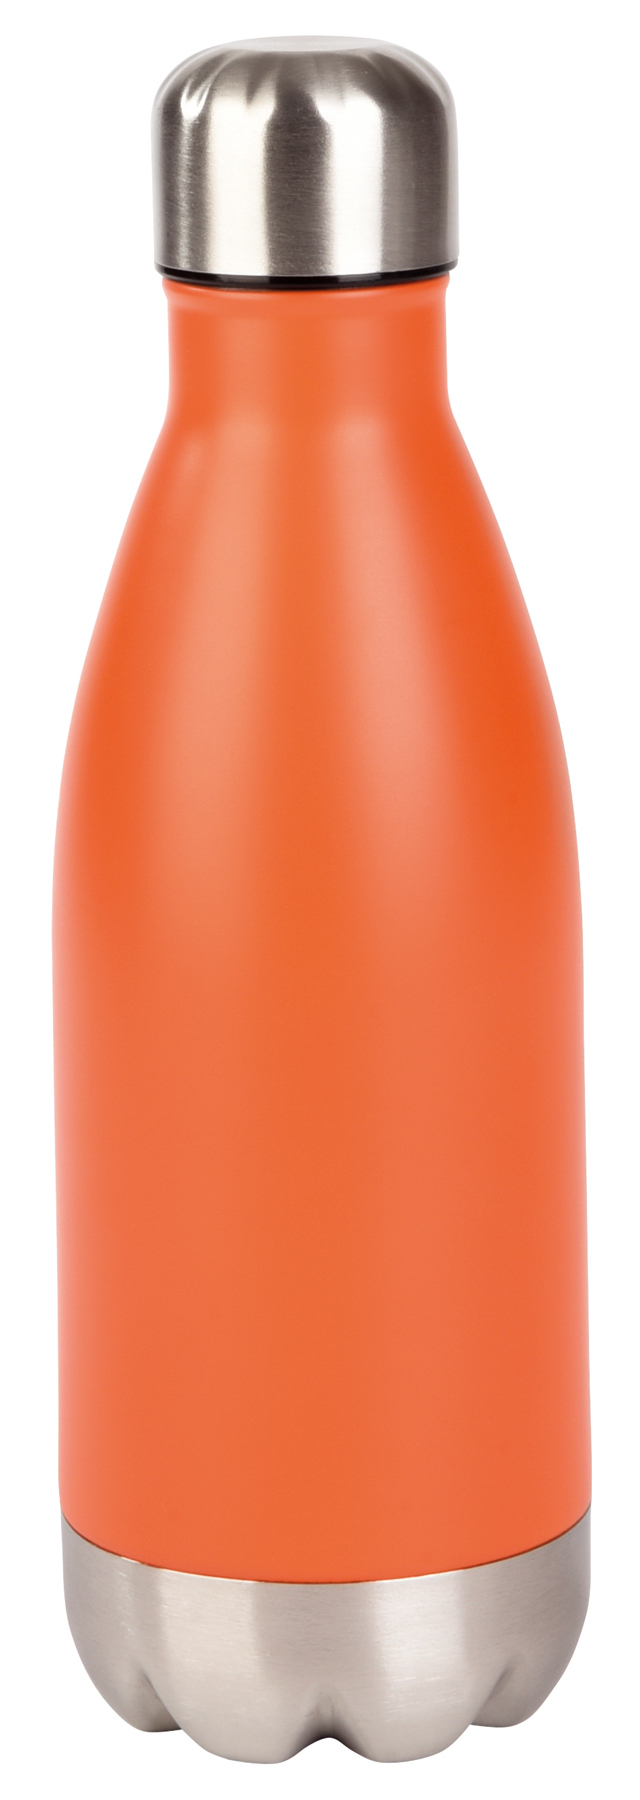 Cestovní láhev PARKY - oranžová